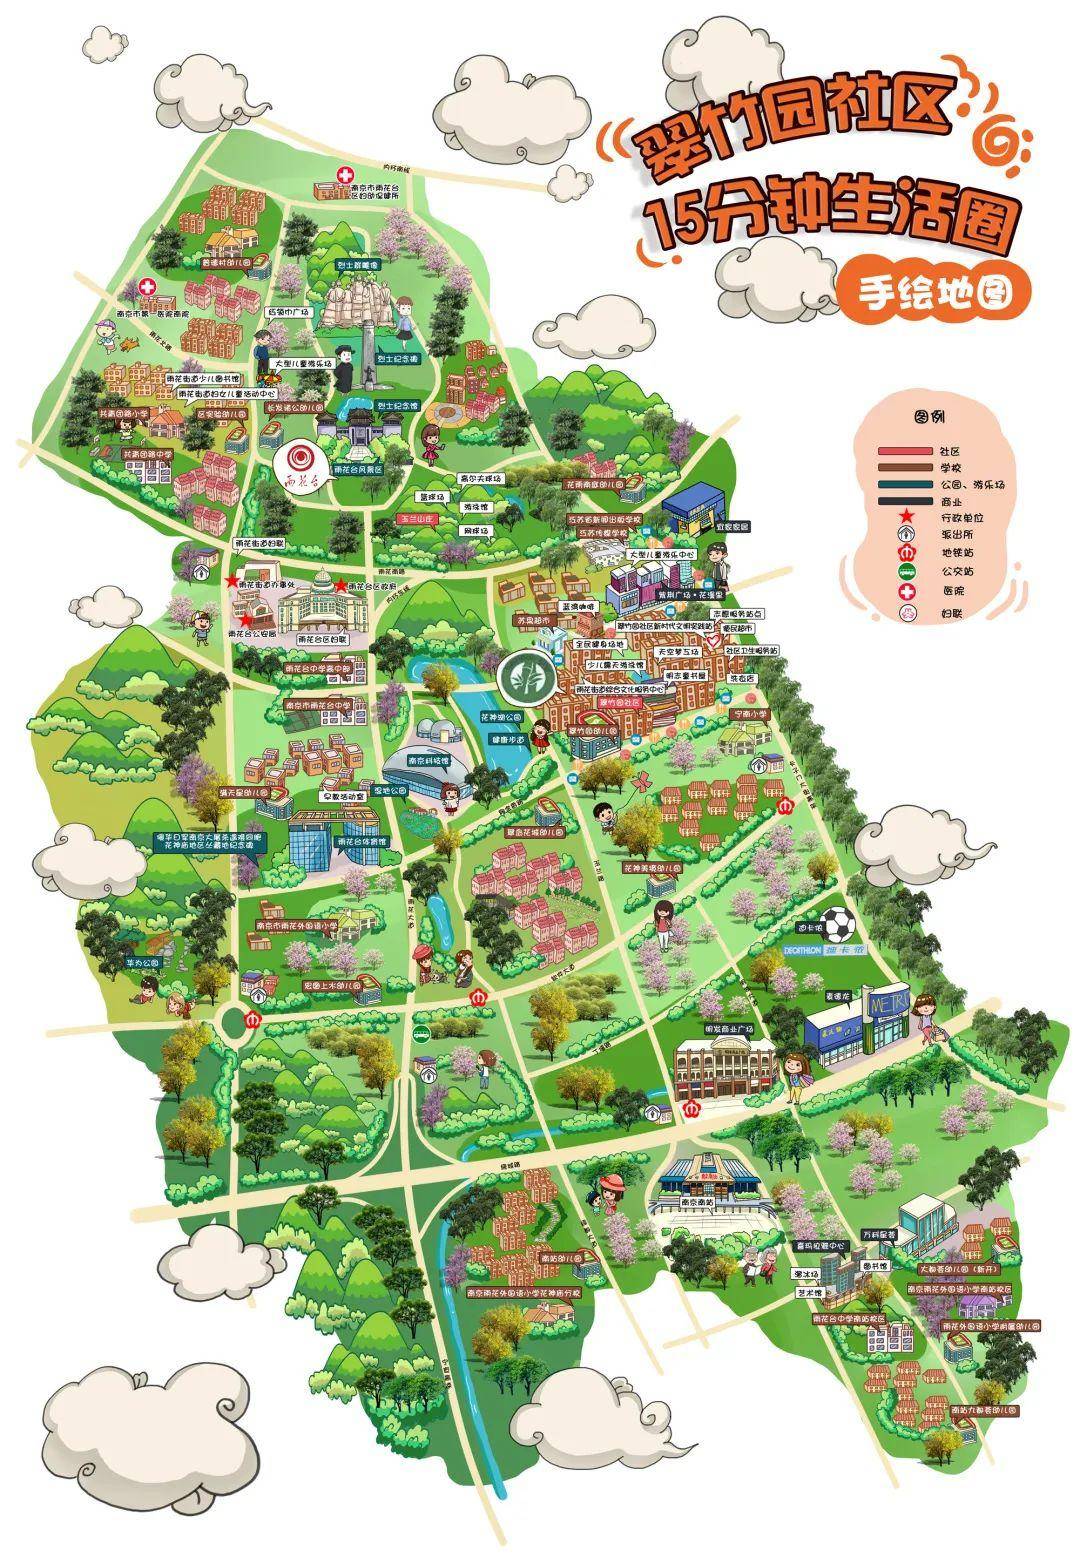 翠竹园社区15分钟便民生活圈手绘地图社区供图